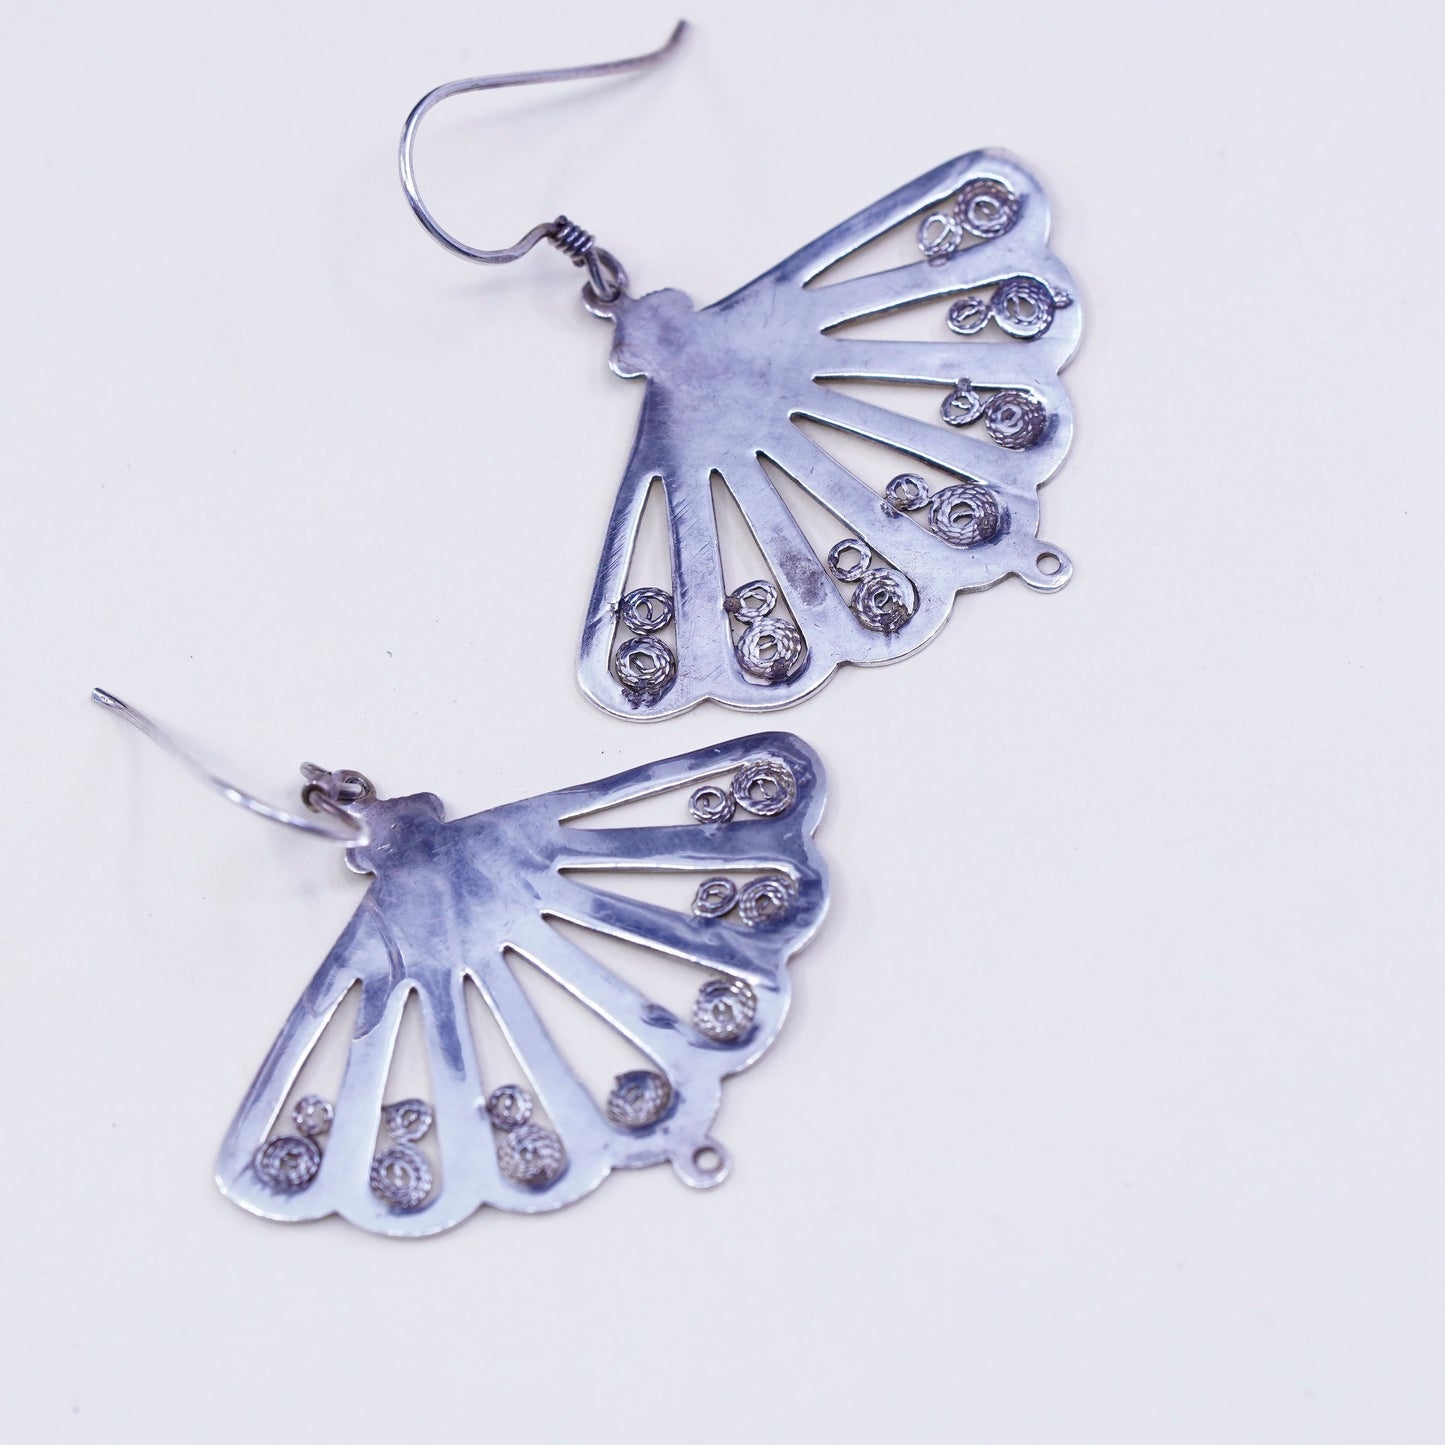 Vintage sterling silver handmade earrings 925 filigree fan dangles